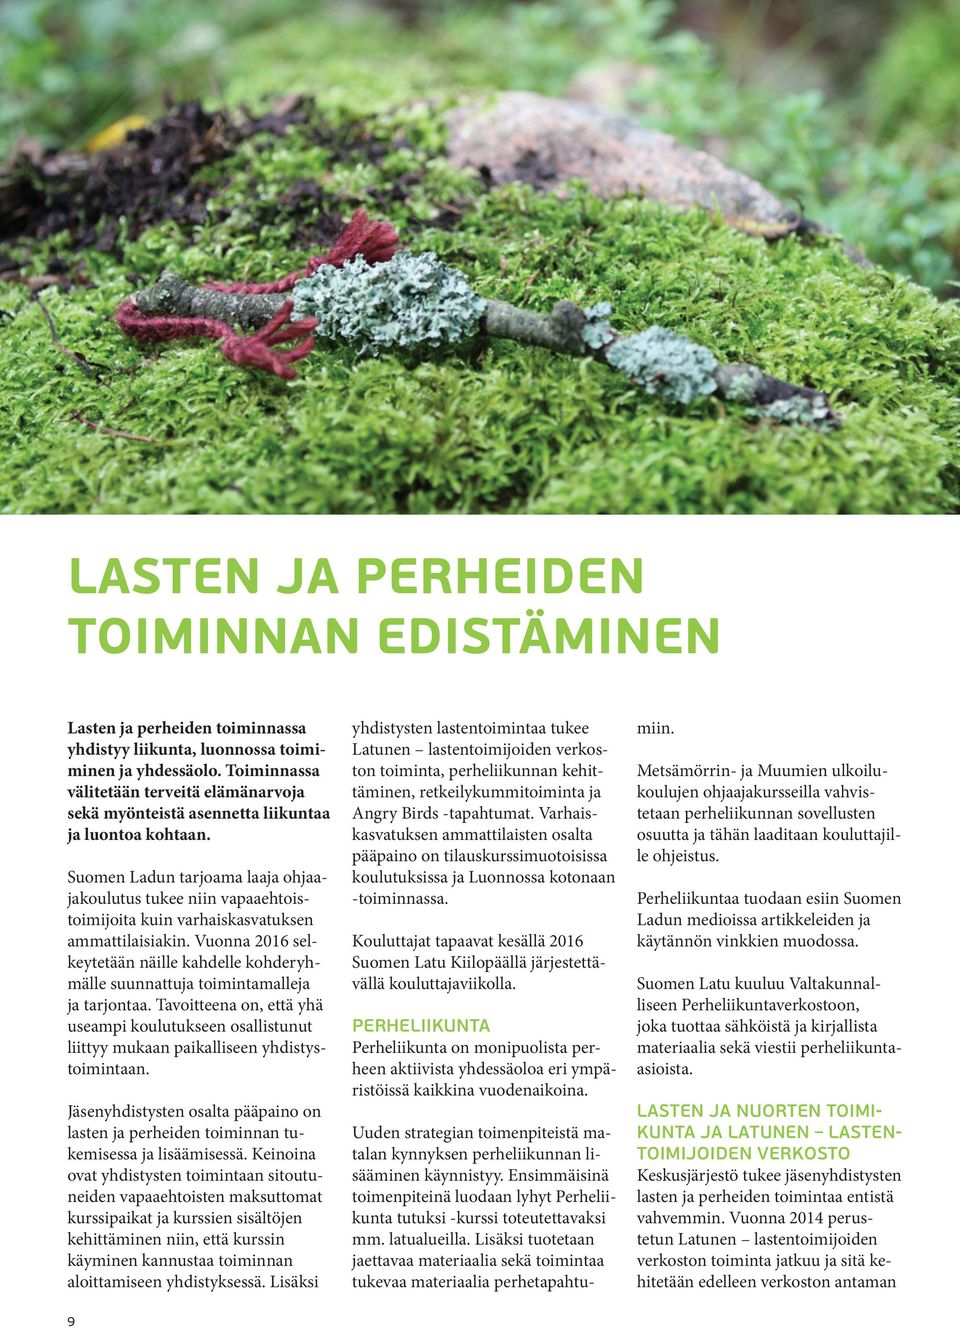 Suomen Ladun tarjoama laaja ohjaajakoulutus tukee niin vapaaehtoistoimijoita kuin varhaiskasvatuksen ammattilaisiakin.